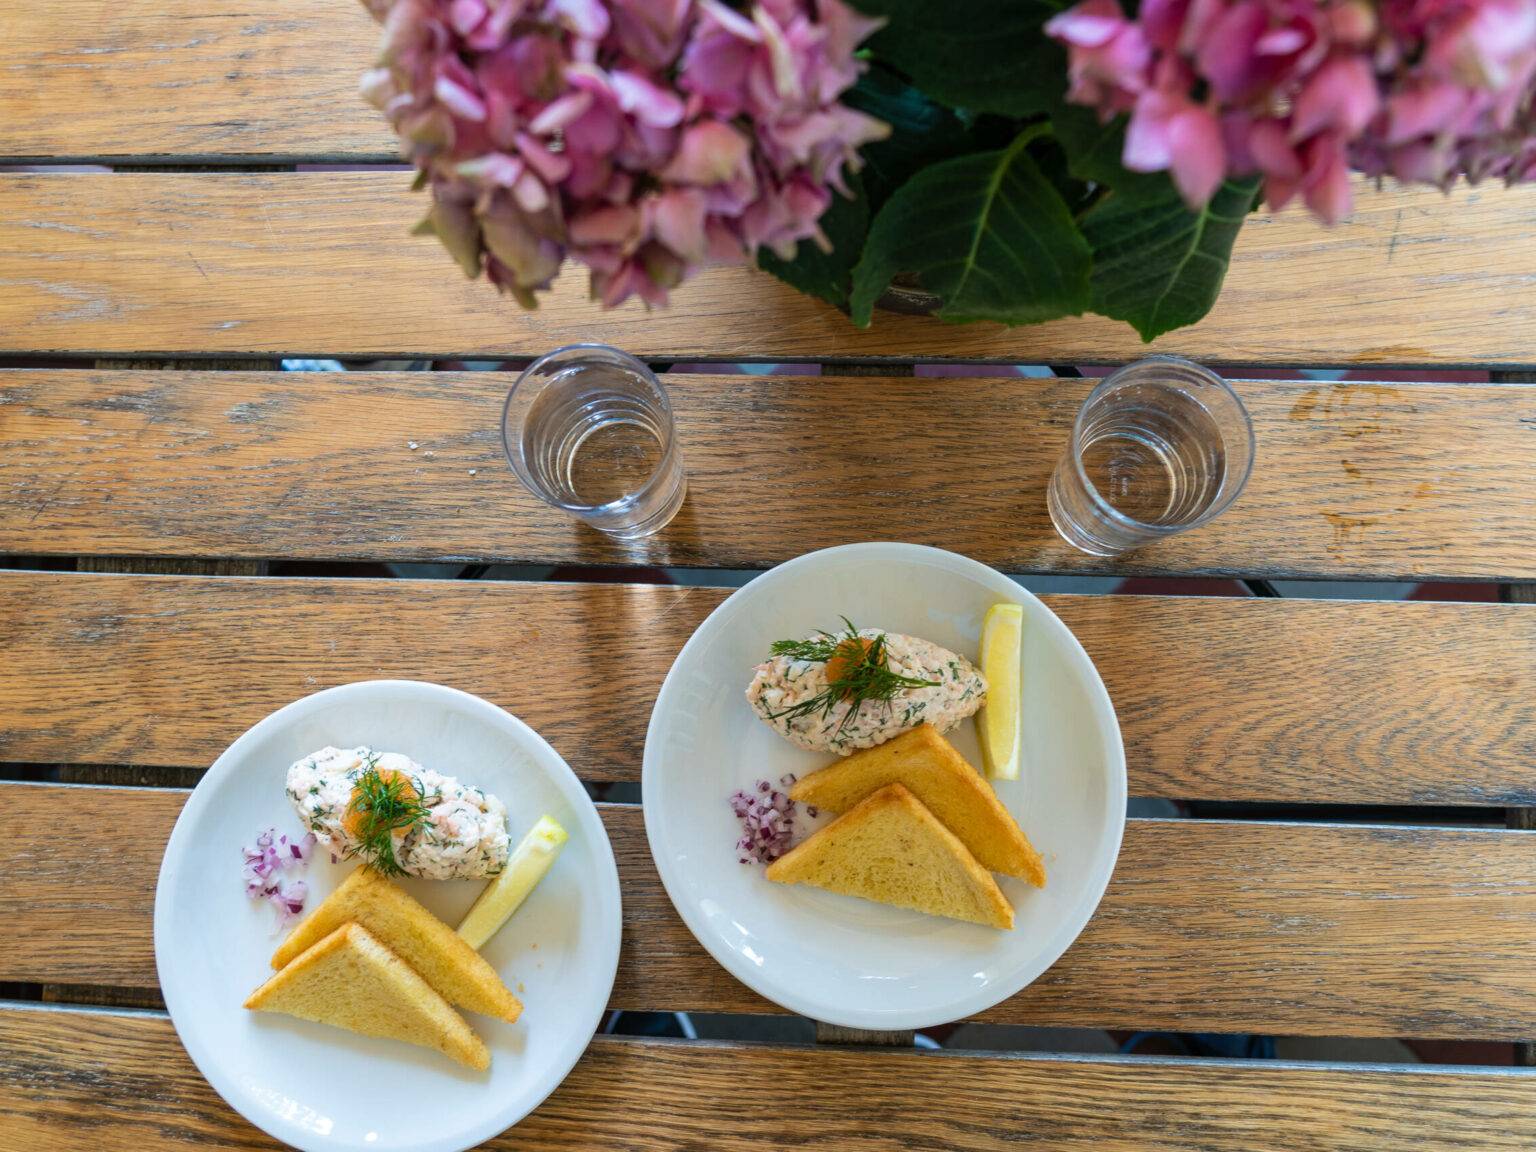 Auf einem Holztisch stehen zwei Teller mit dem typisch schwedischen Gericht Toast Skagen, ein Garnelensalat mit Sauerrahm und Dill mit Toastscheiben.